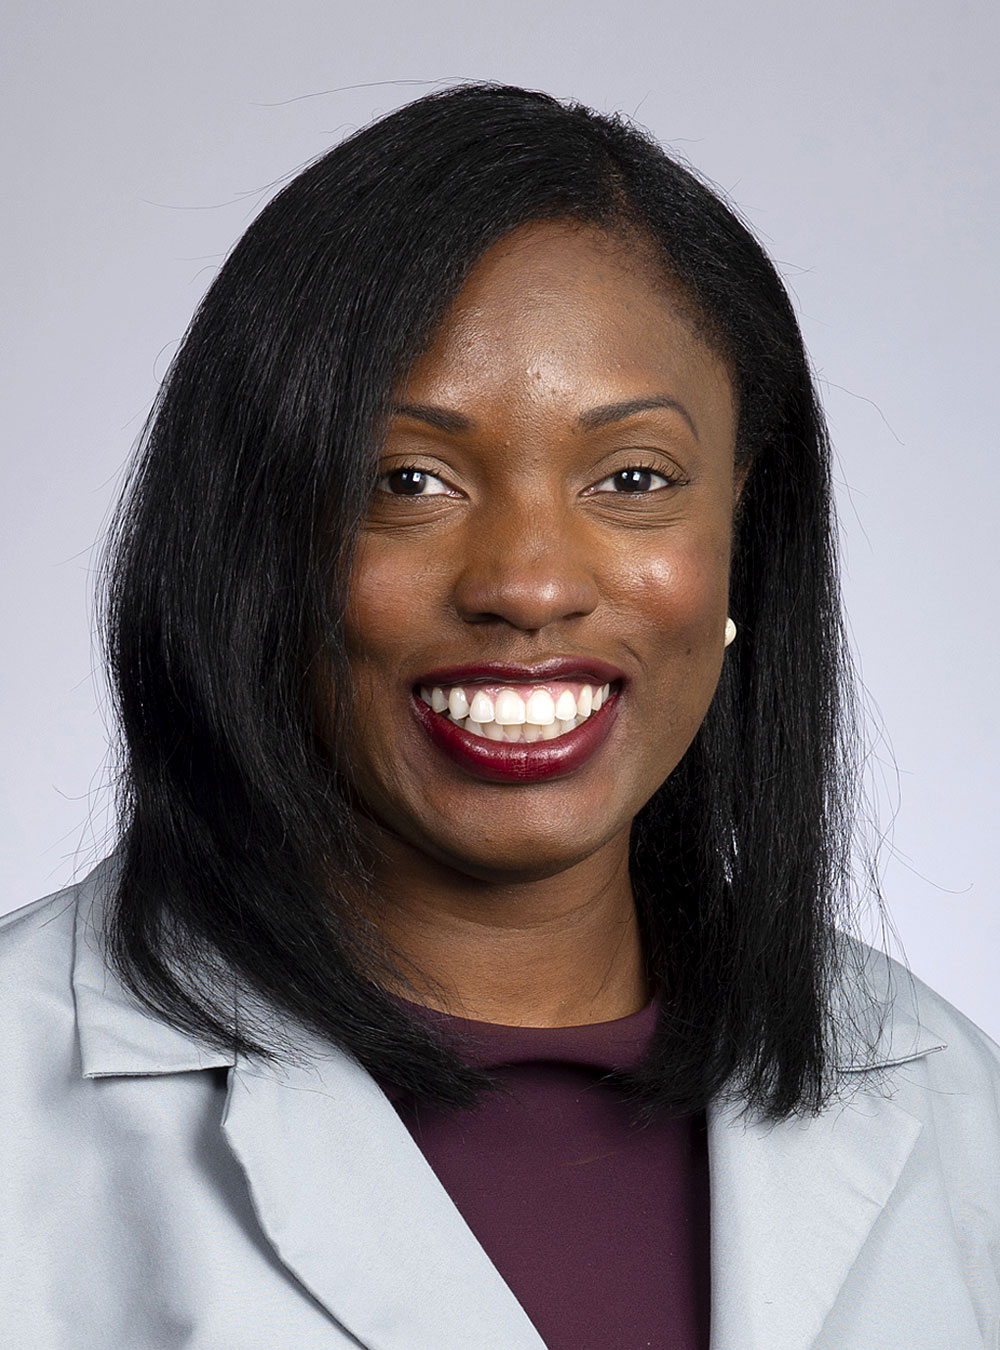 Stritch School of Medicine faculty member, Denise Asafu-adjei